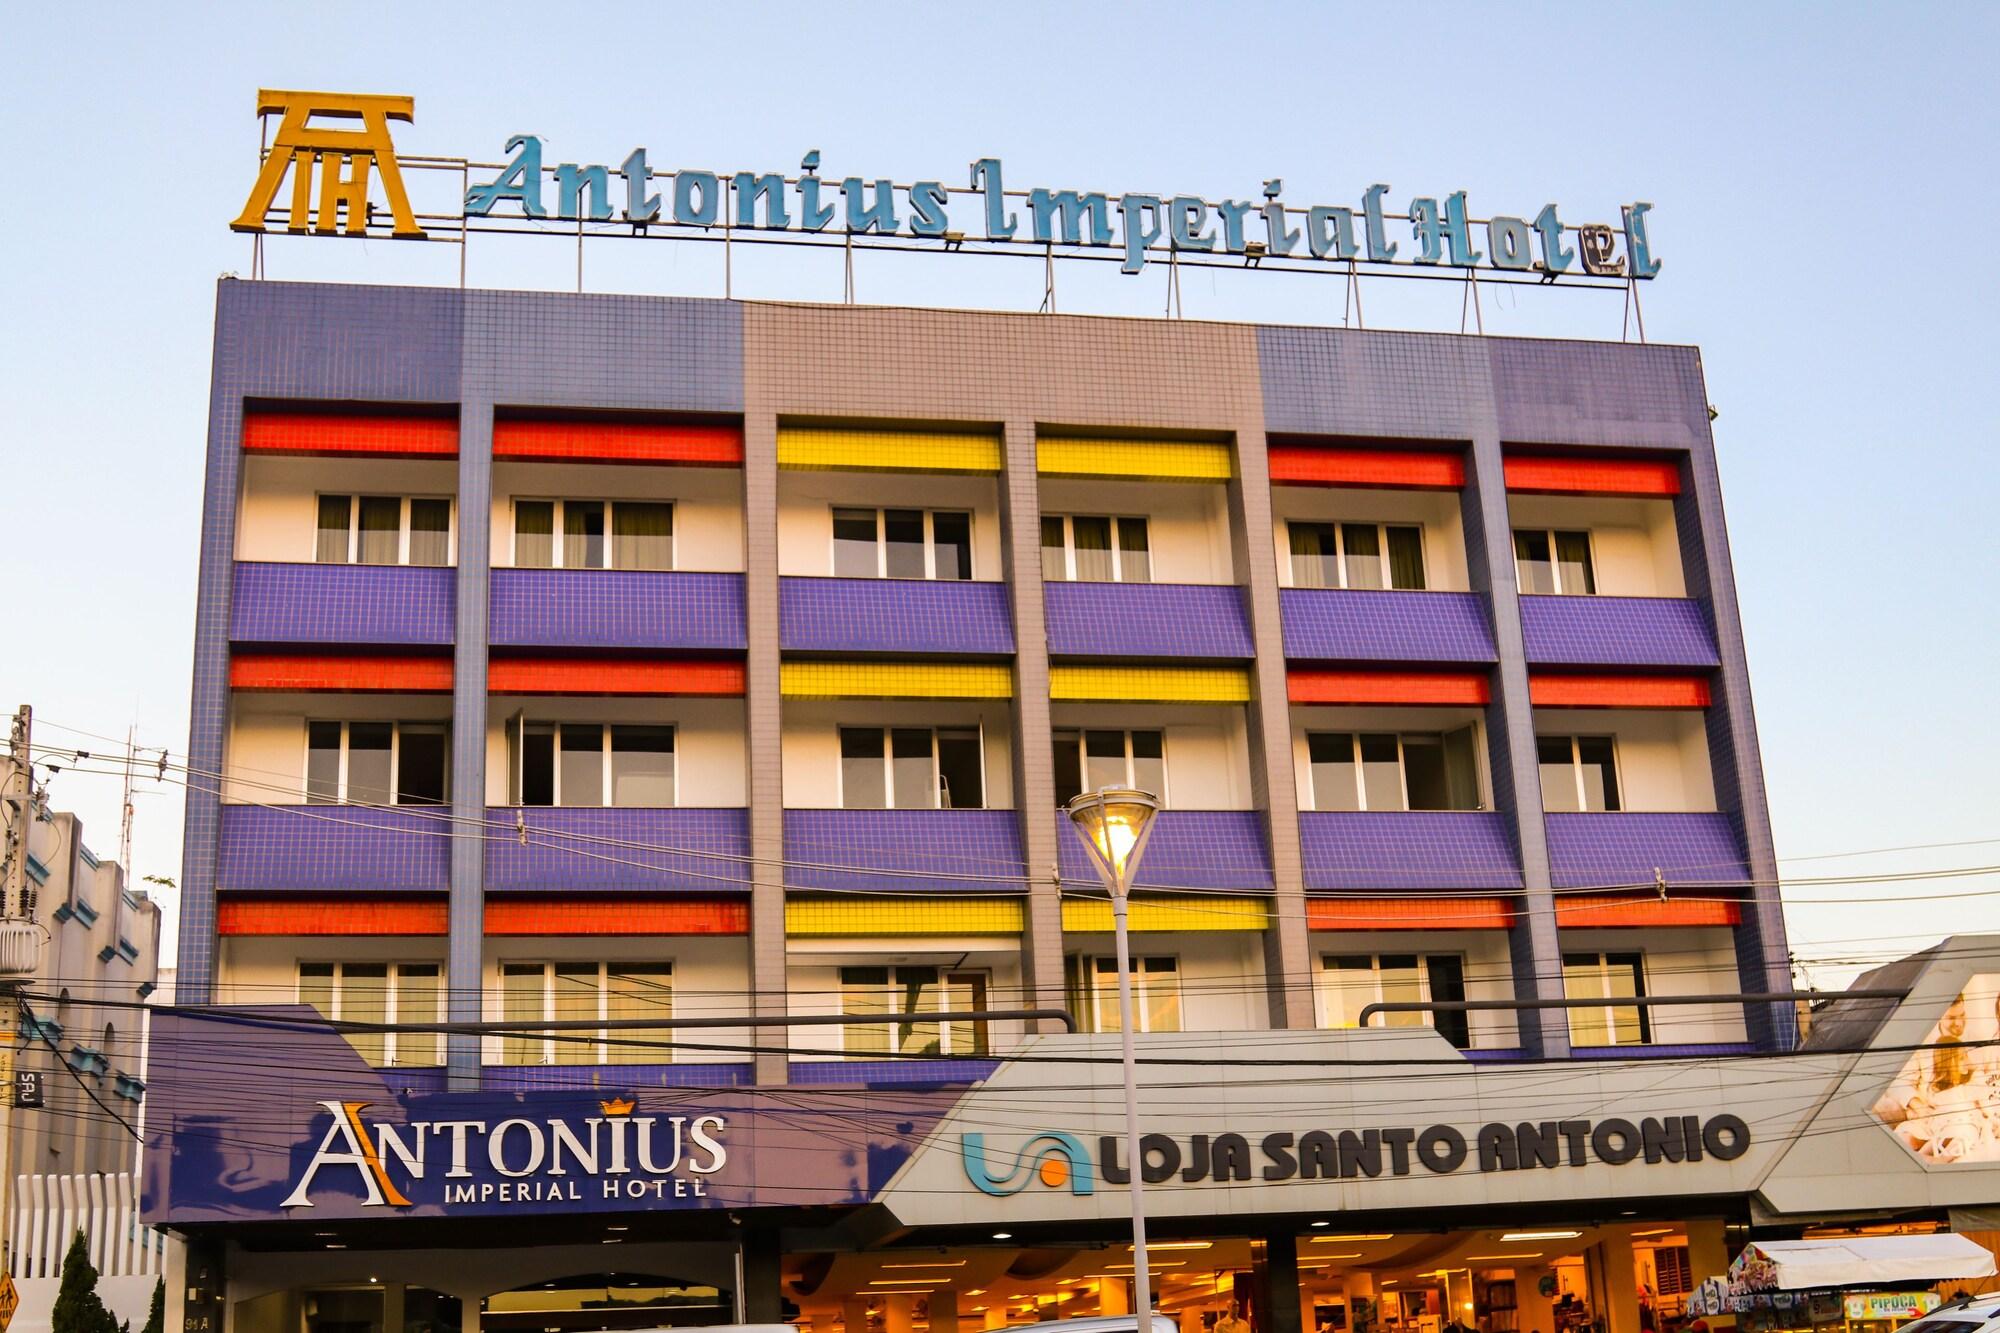 ANTONIUS IMPERIAL HOTEL